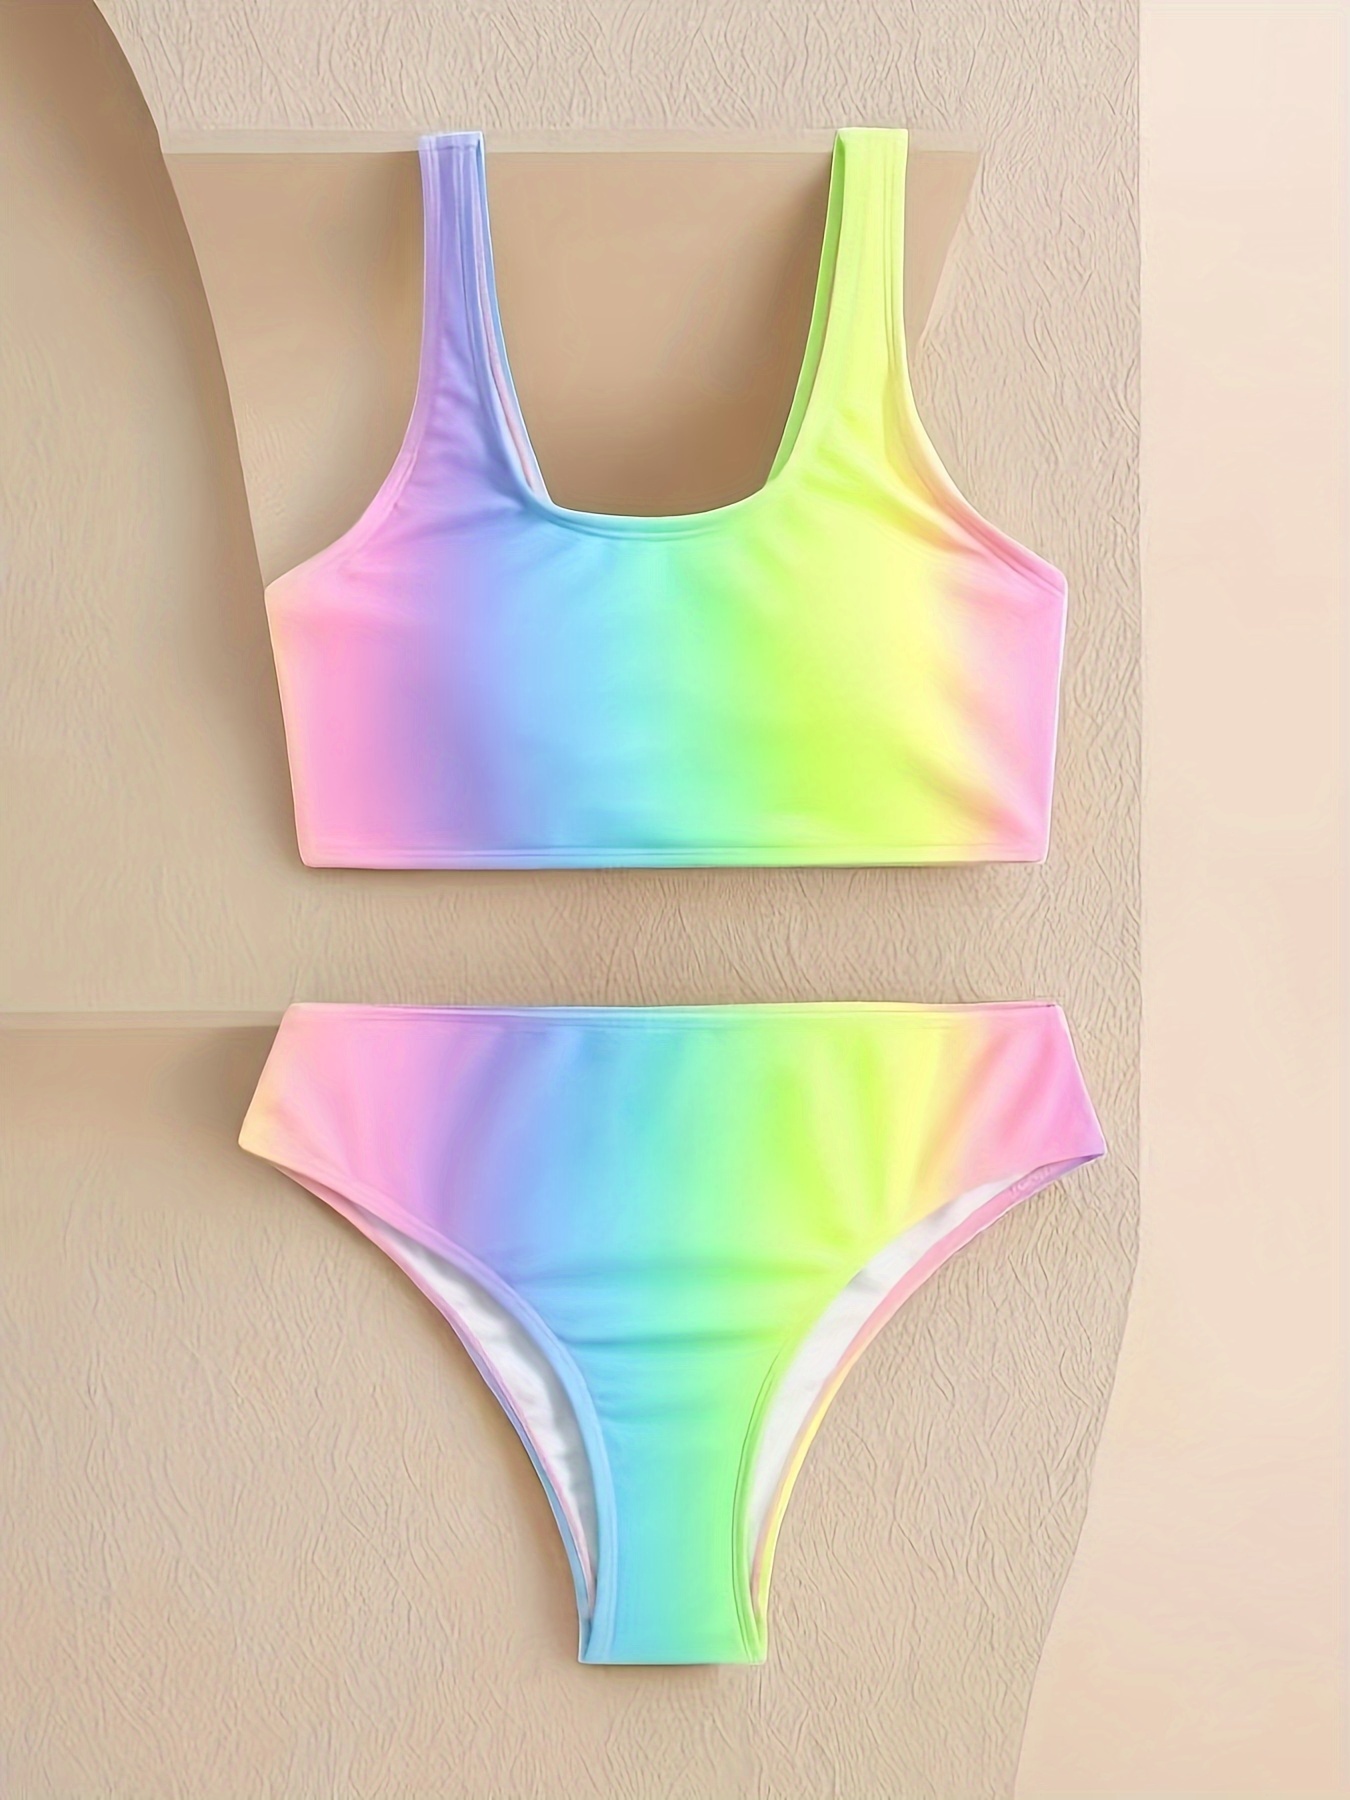 Pastel Rainbow Swimsuit - 2 piece bathing suit